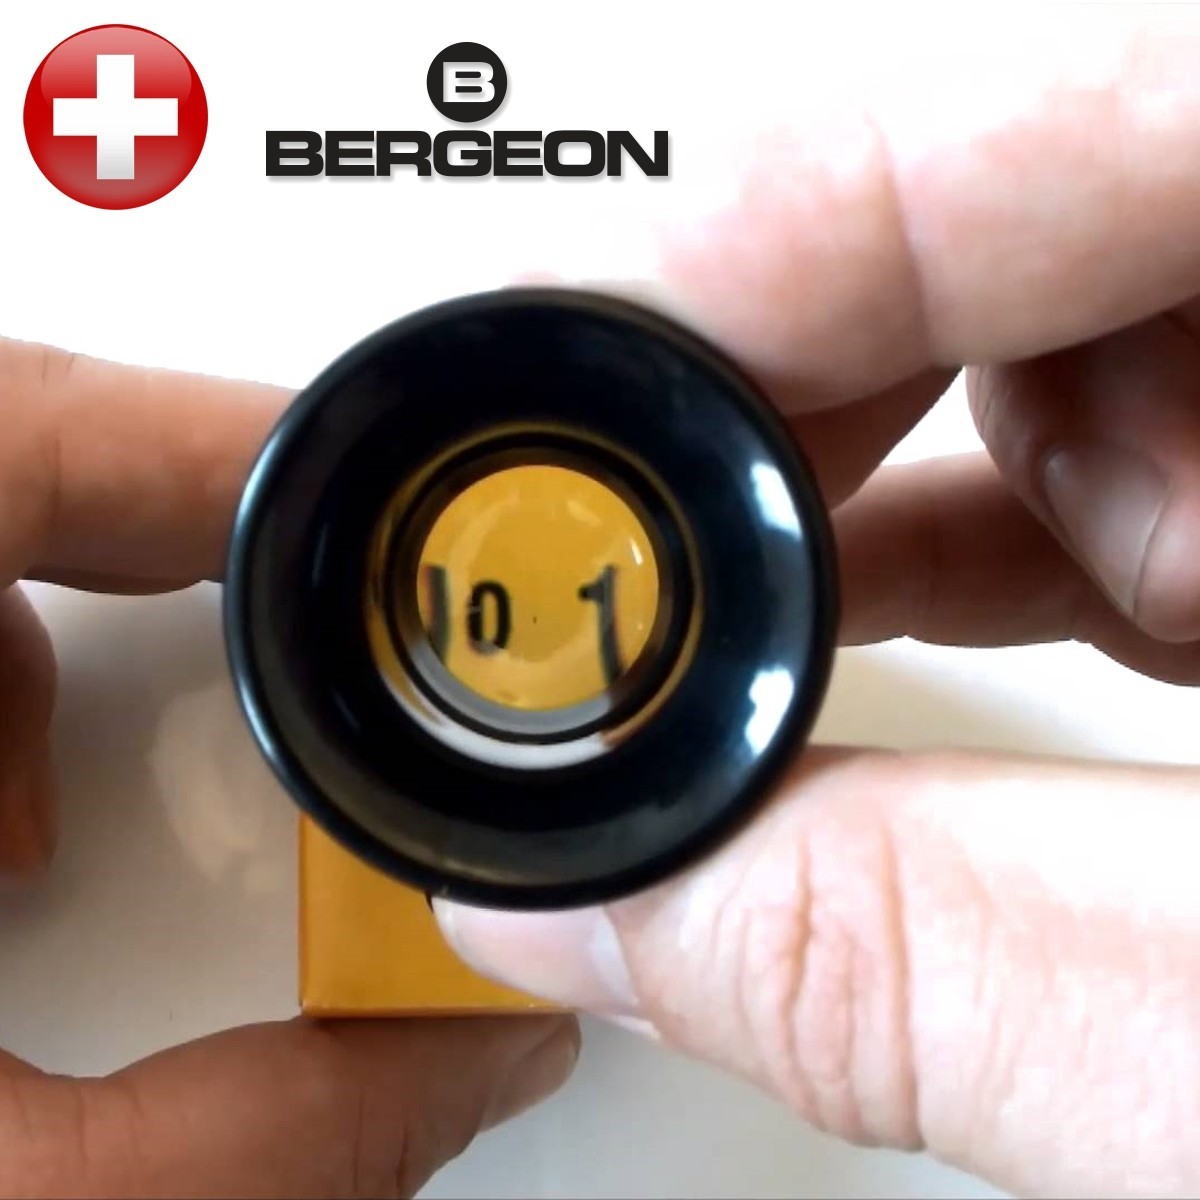 Bergeon 1458-a-15 Uhrmacher Doppel Objektiv Brillenlupe 15x Vergrößerung 